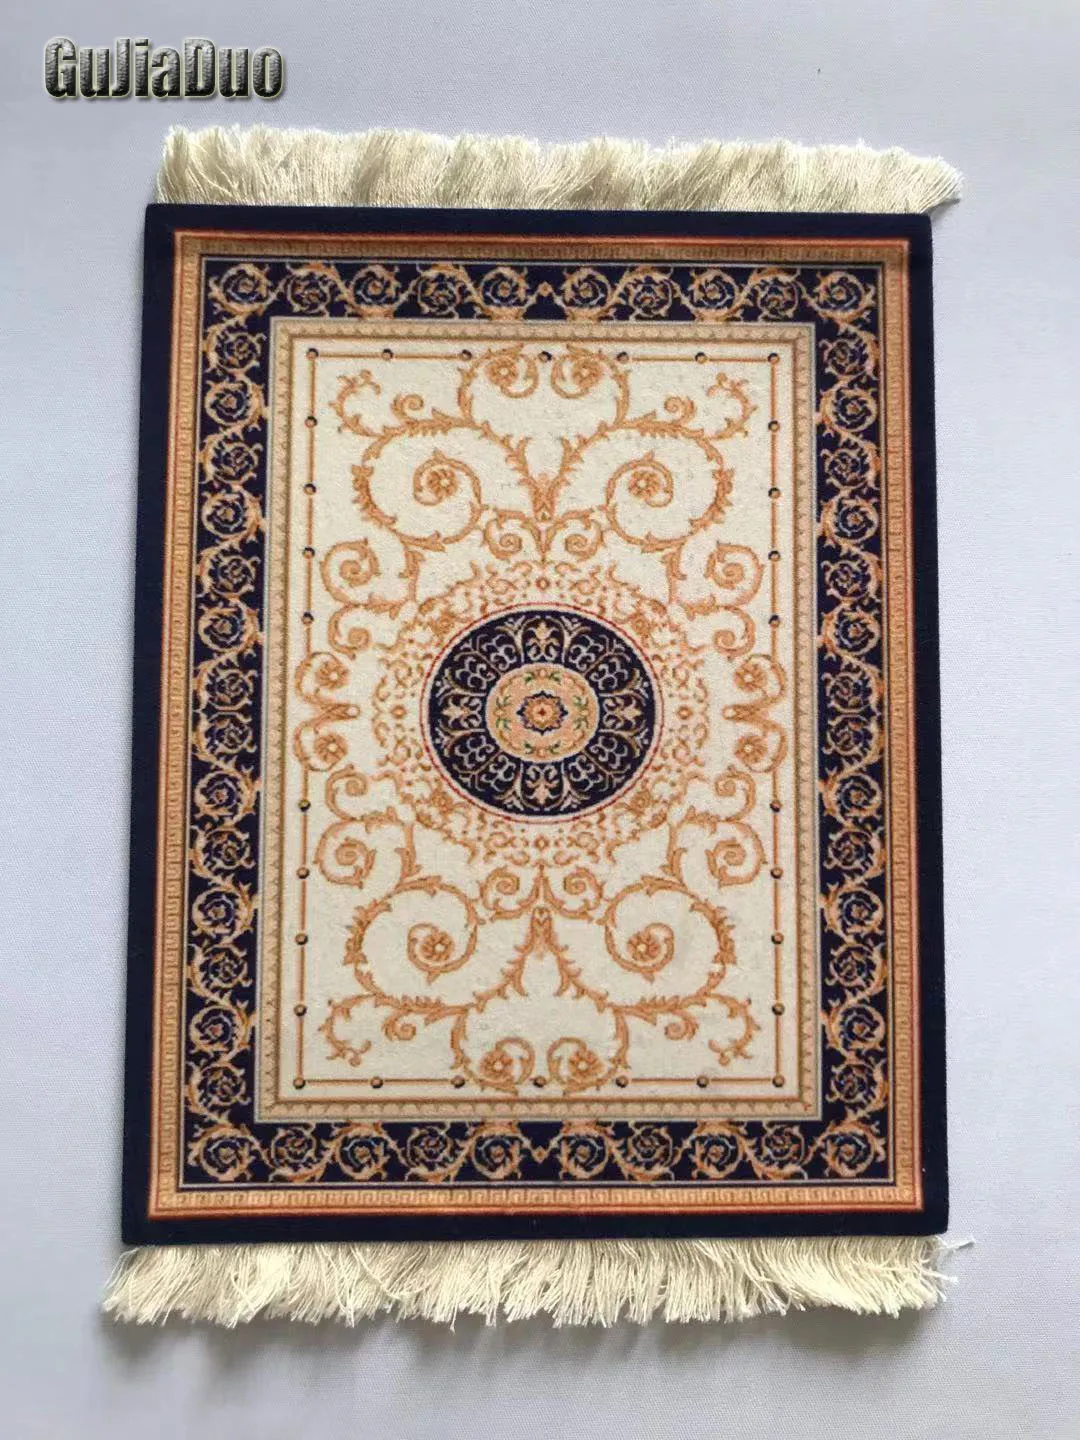 GuJiaDuo 22x18 см персидский коврик для компьютерной мыши подставка с кисточкой Модный